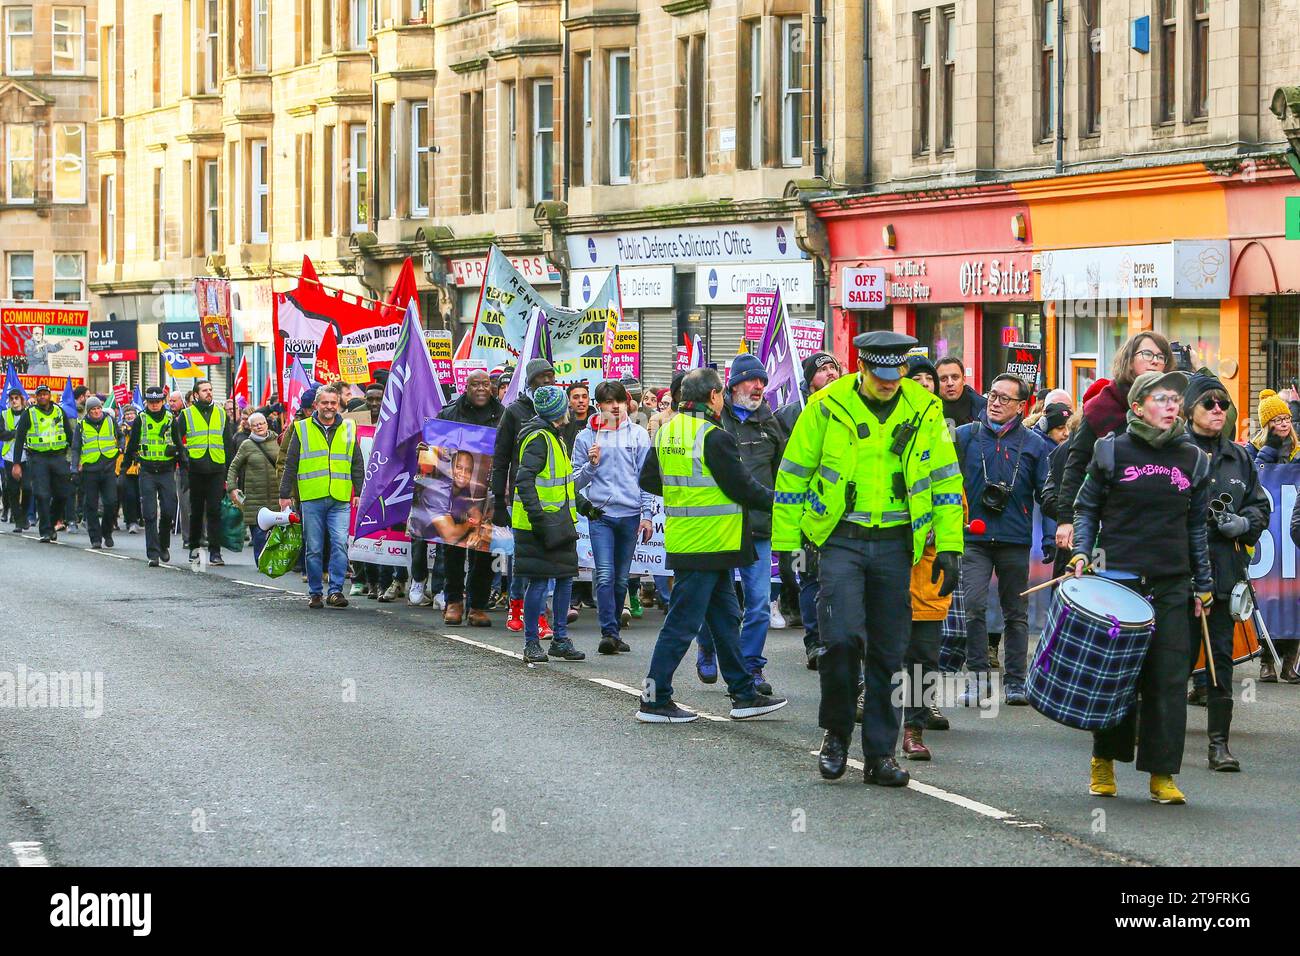 23 novembre 25. Glasgow, Regno Unito. La parata annuale del St Andrew's Day Parade dello Scottish Trades Union Congress (STUC) si svolse attraverso il centro di Glasgow con una collezione di diversi gruppi politici, socialisti e di sinistra. La sfilata, per consuetudine, si tiene ogni anno l'ultimo sabato di novembre. ANAS SARWAR, MSP, leader del Partito laburista scozzese prese parte e guidò la parata. Crediti: Findlay/Alamy Live News Foto Stock